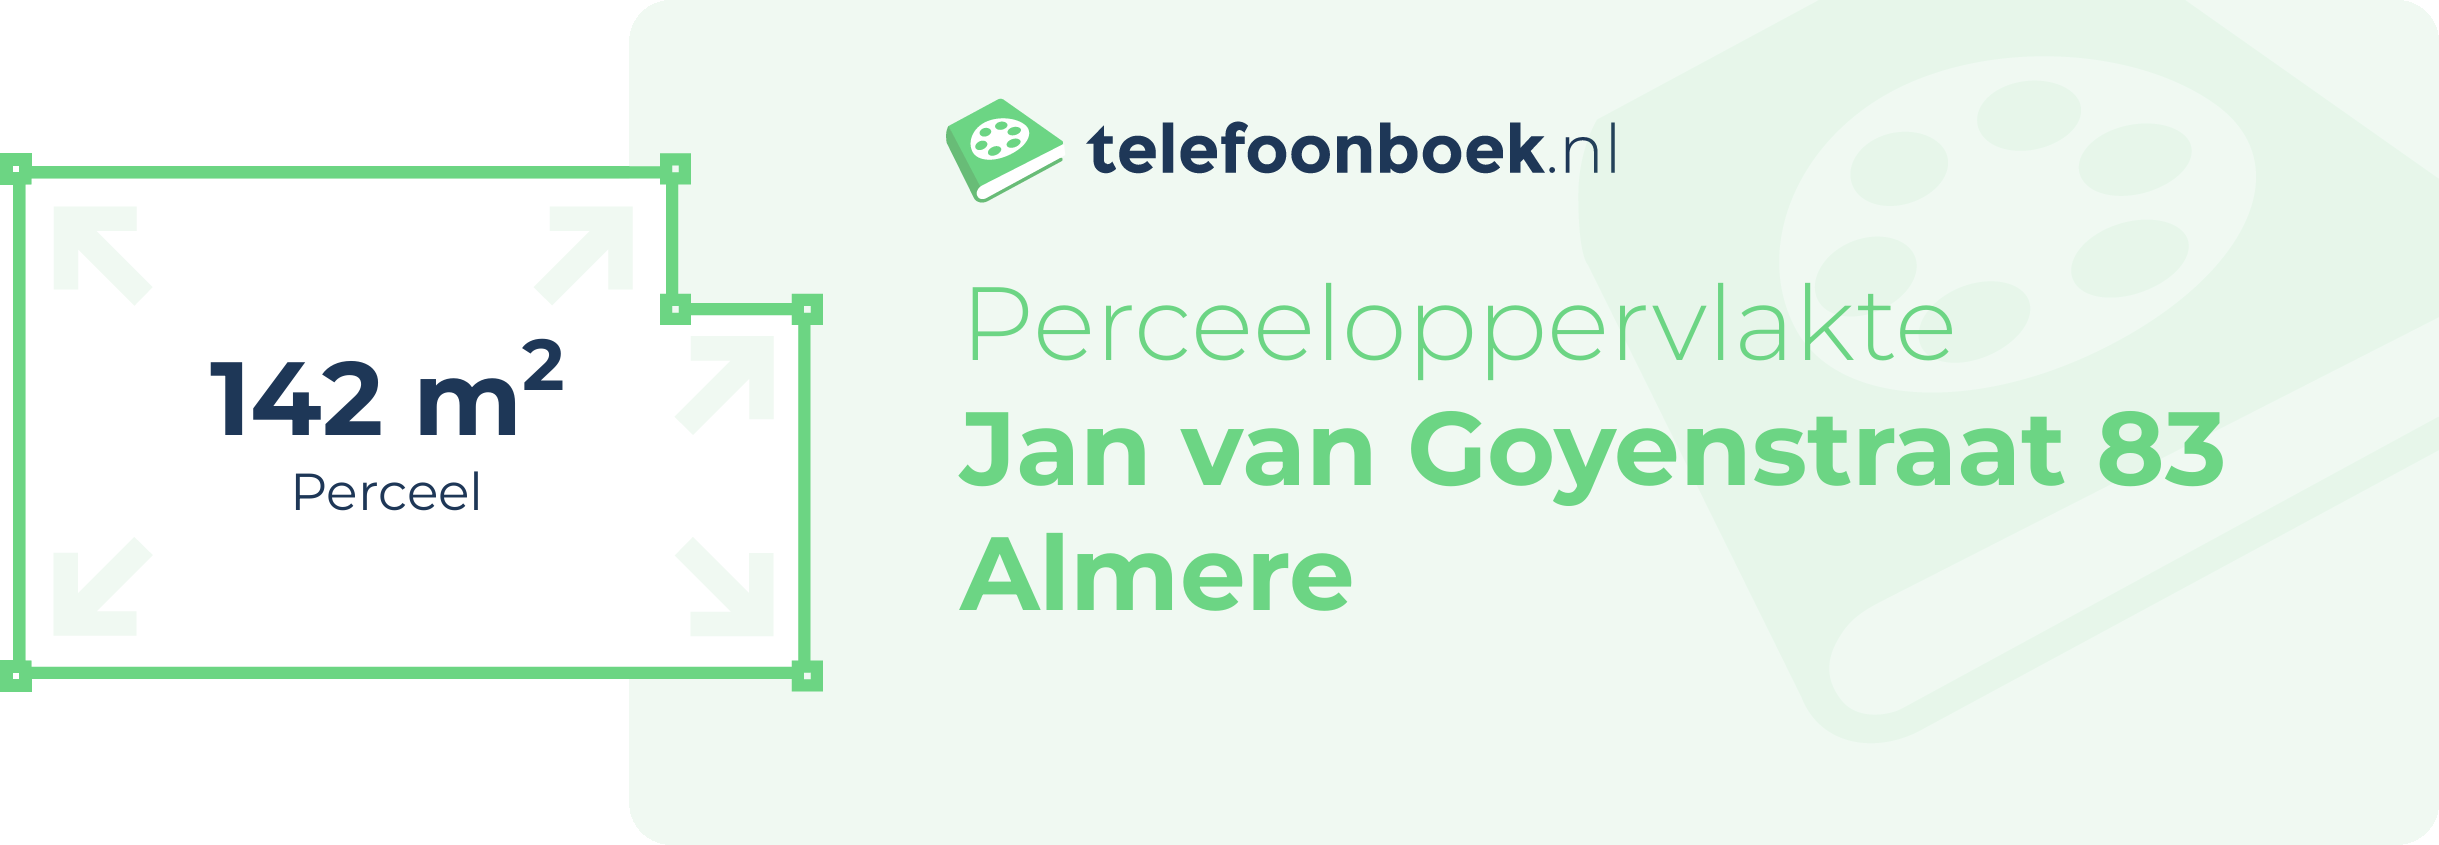 Perceeloppervlakte Jan Van Goyenstraat 83 Almere